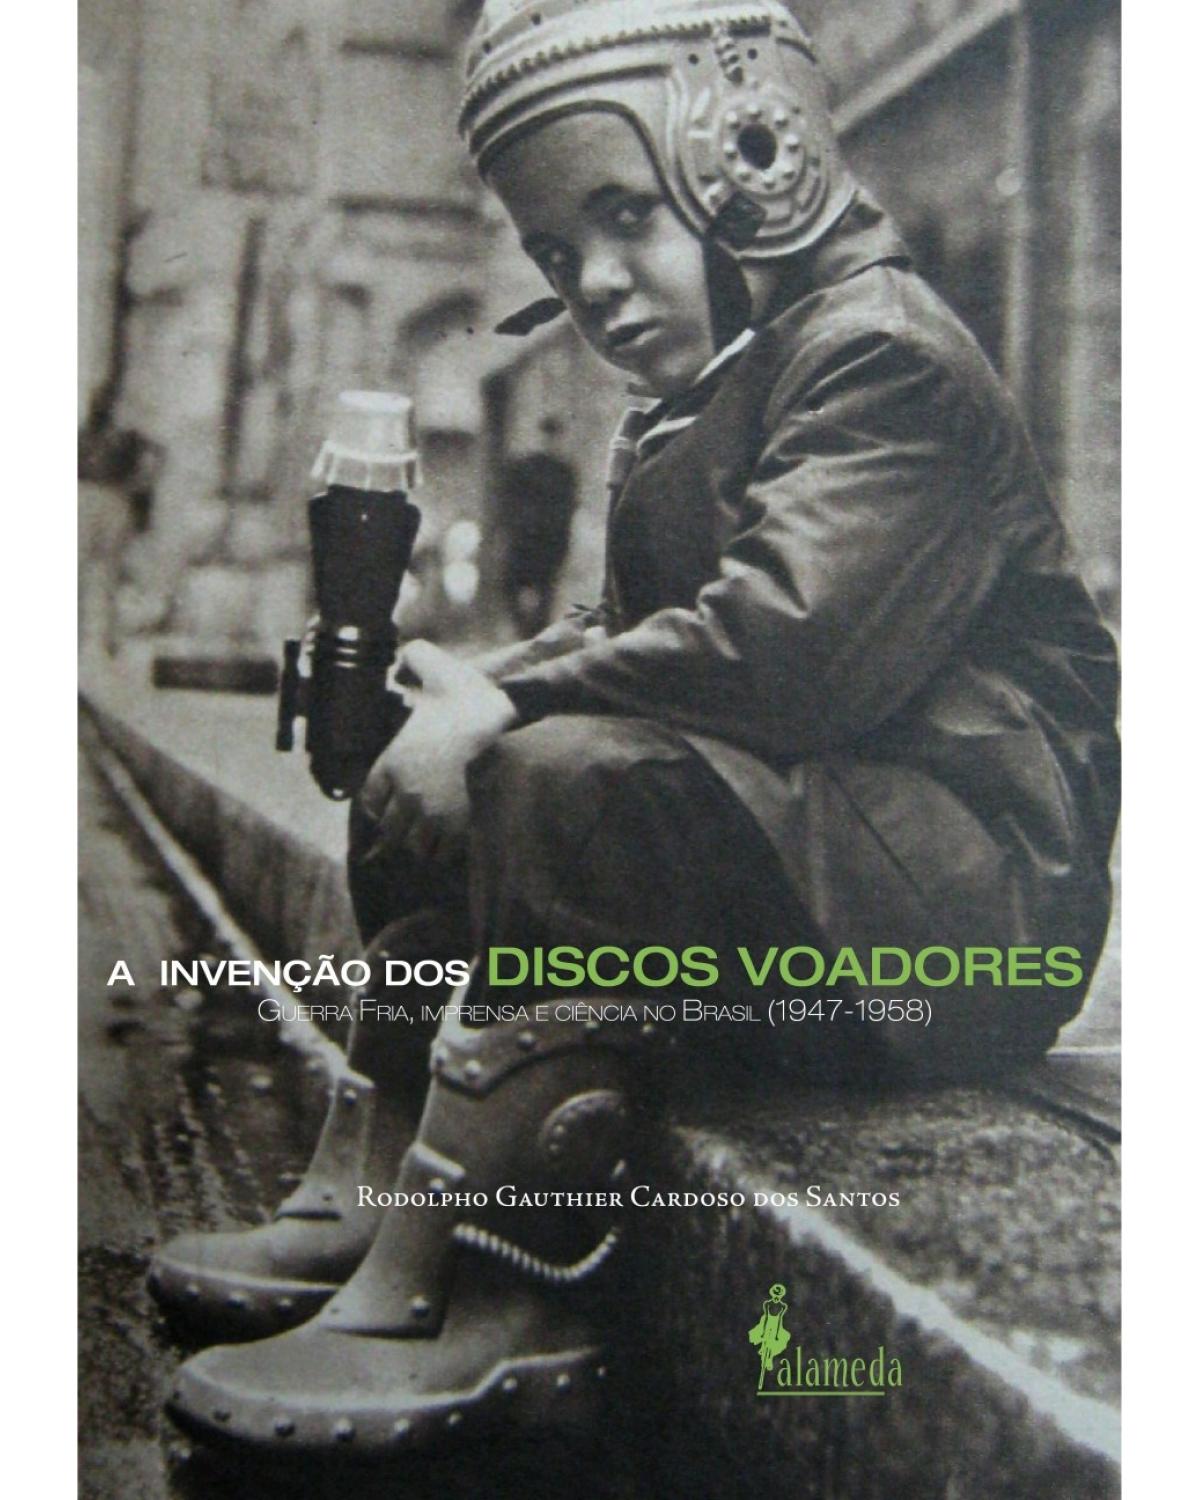 A invenção dos discos voadores - Guerra Fria, imprensa e ciência no Brasil (1947-1958) - 1ª Edição | 2015